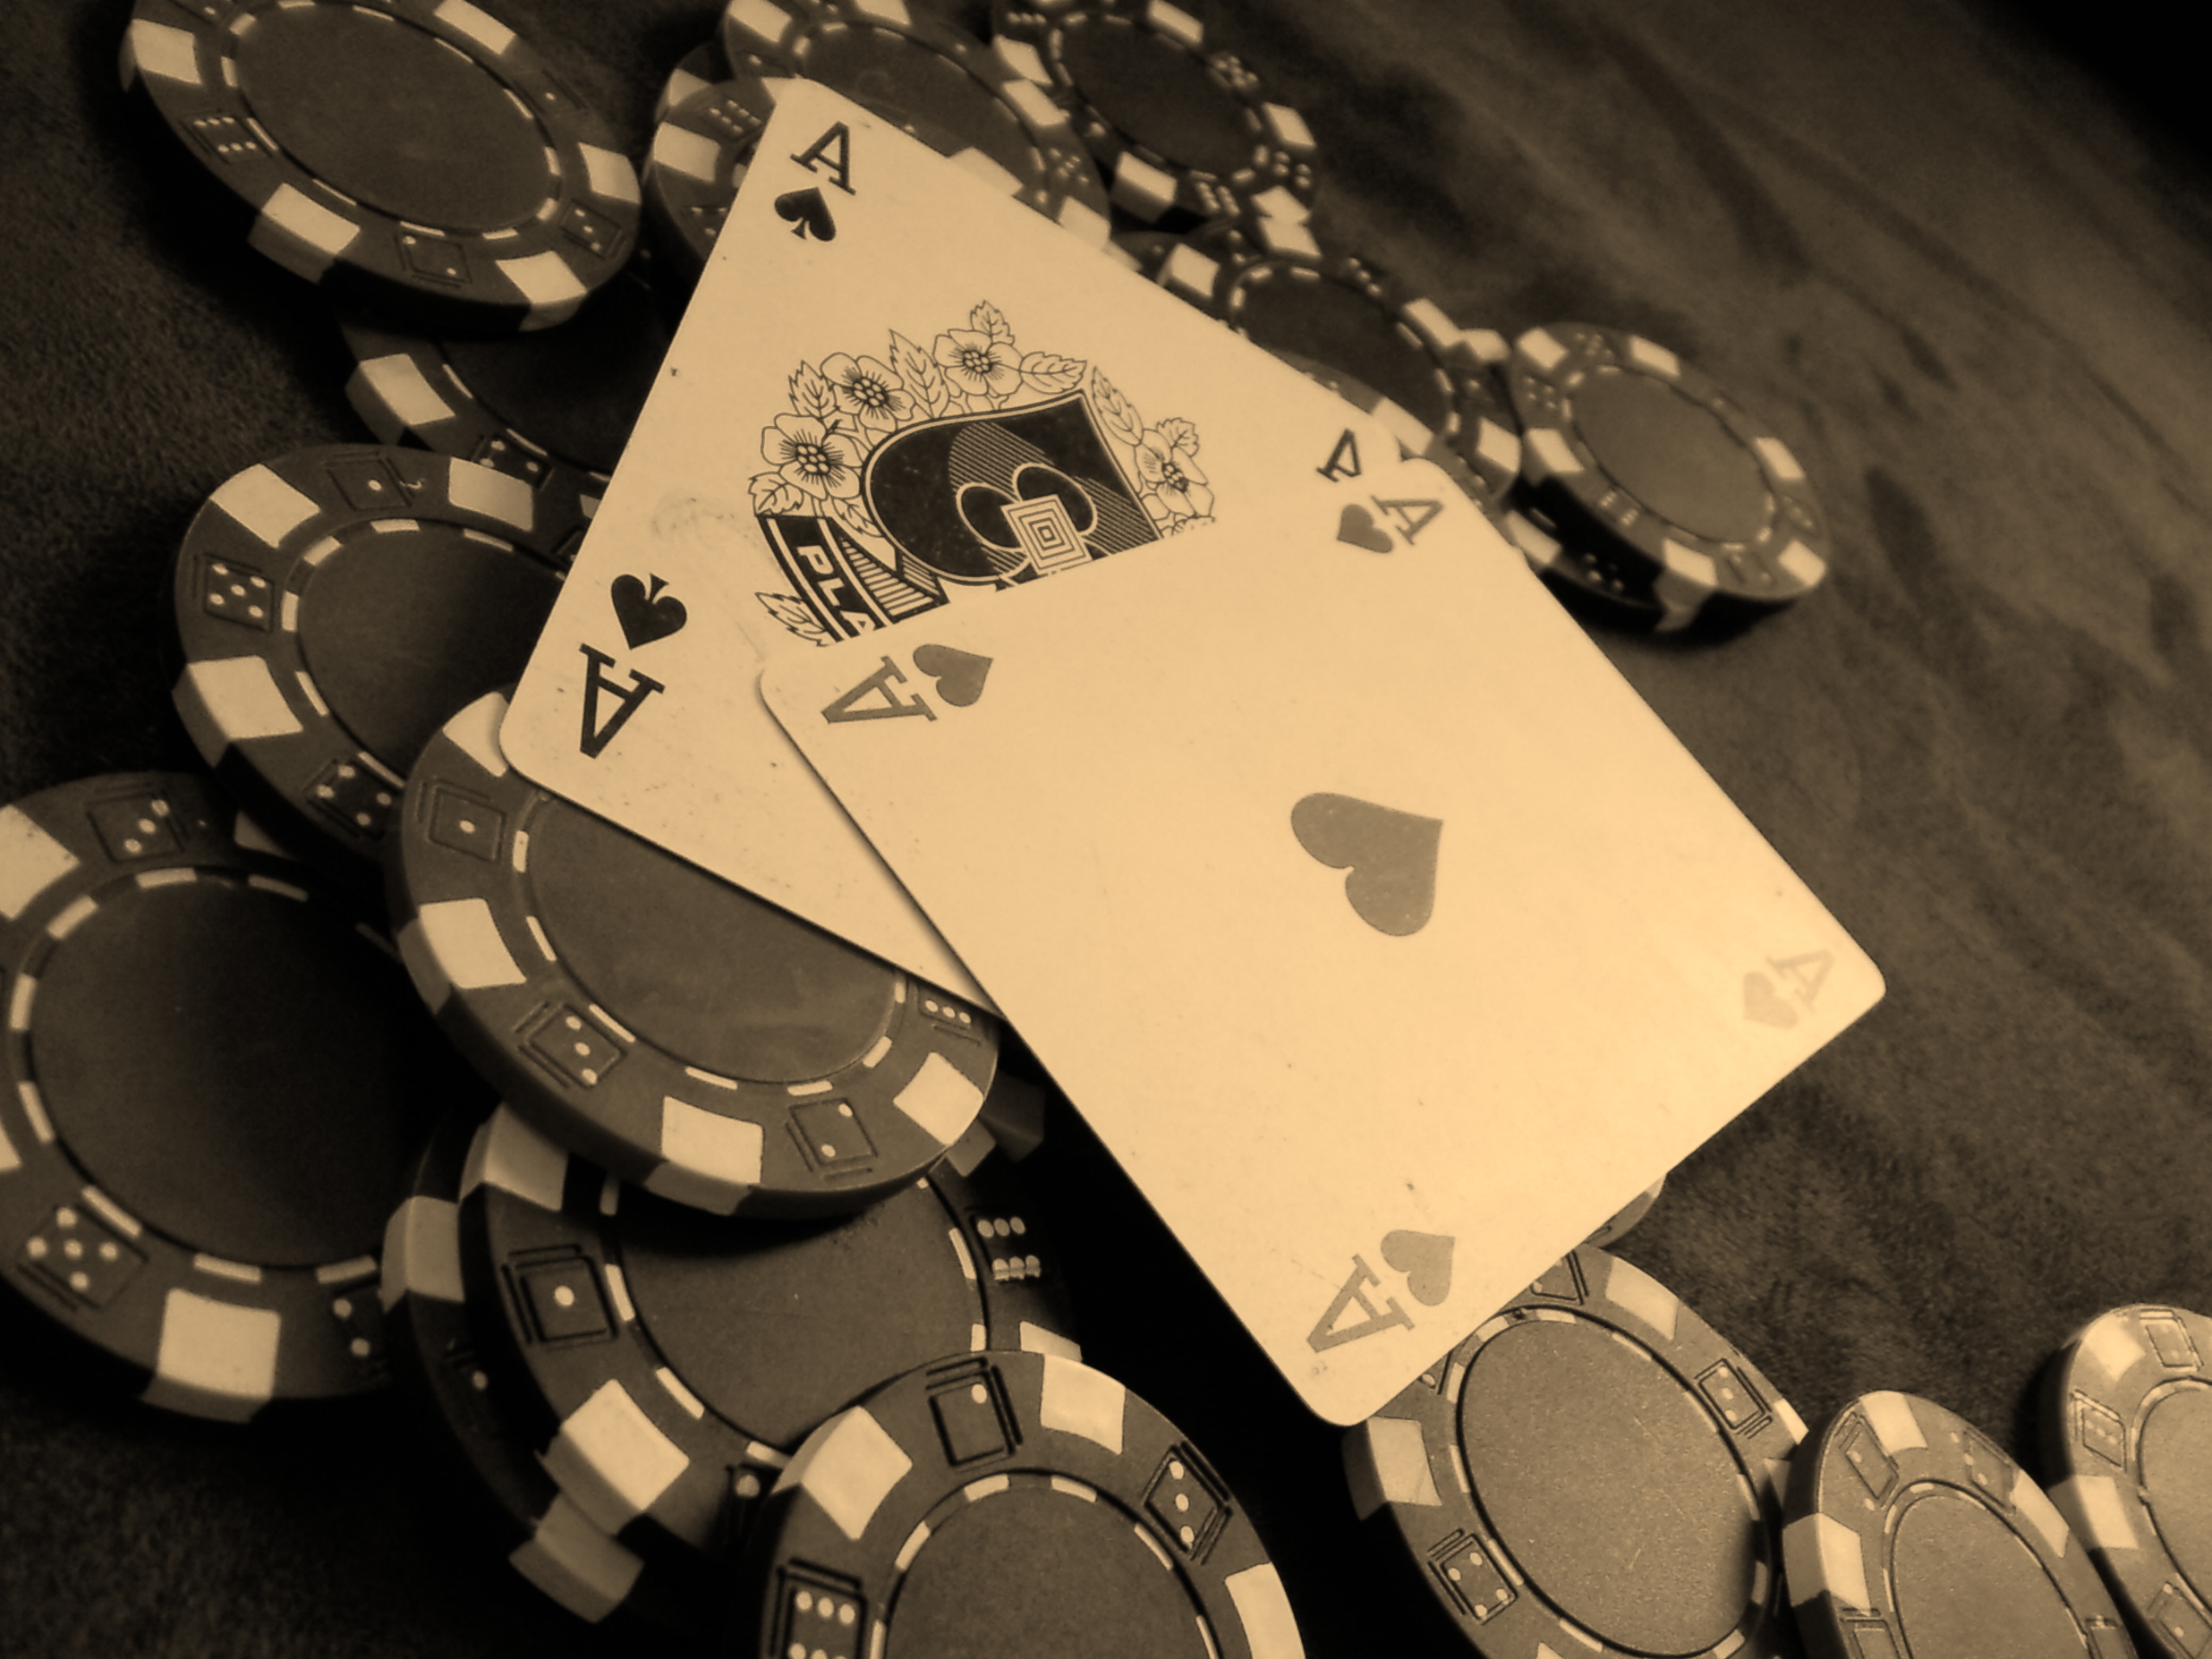 карты, покер, фишки для покера, чипы - обои на рабочий стол